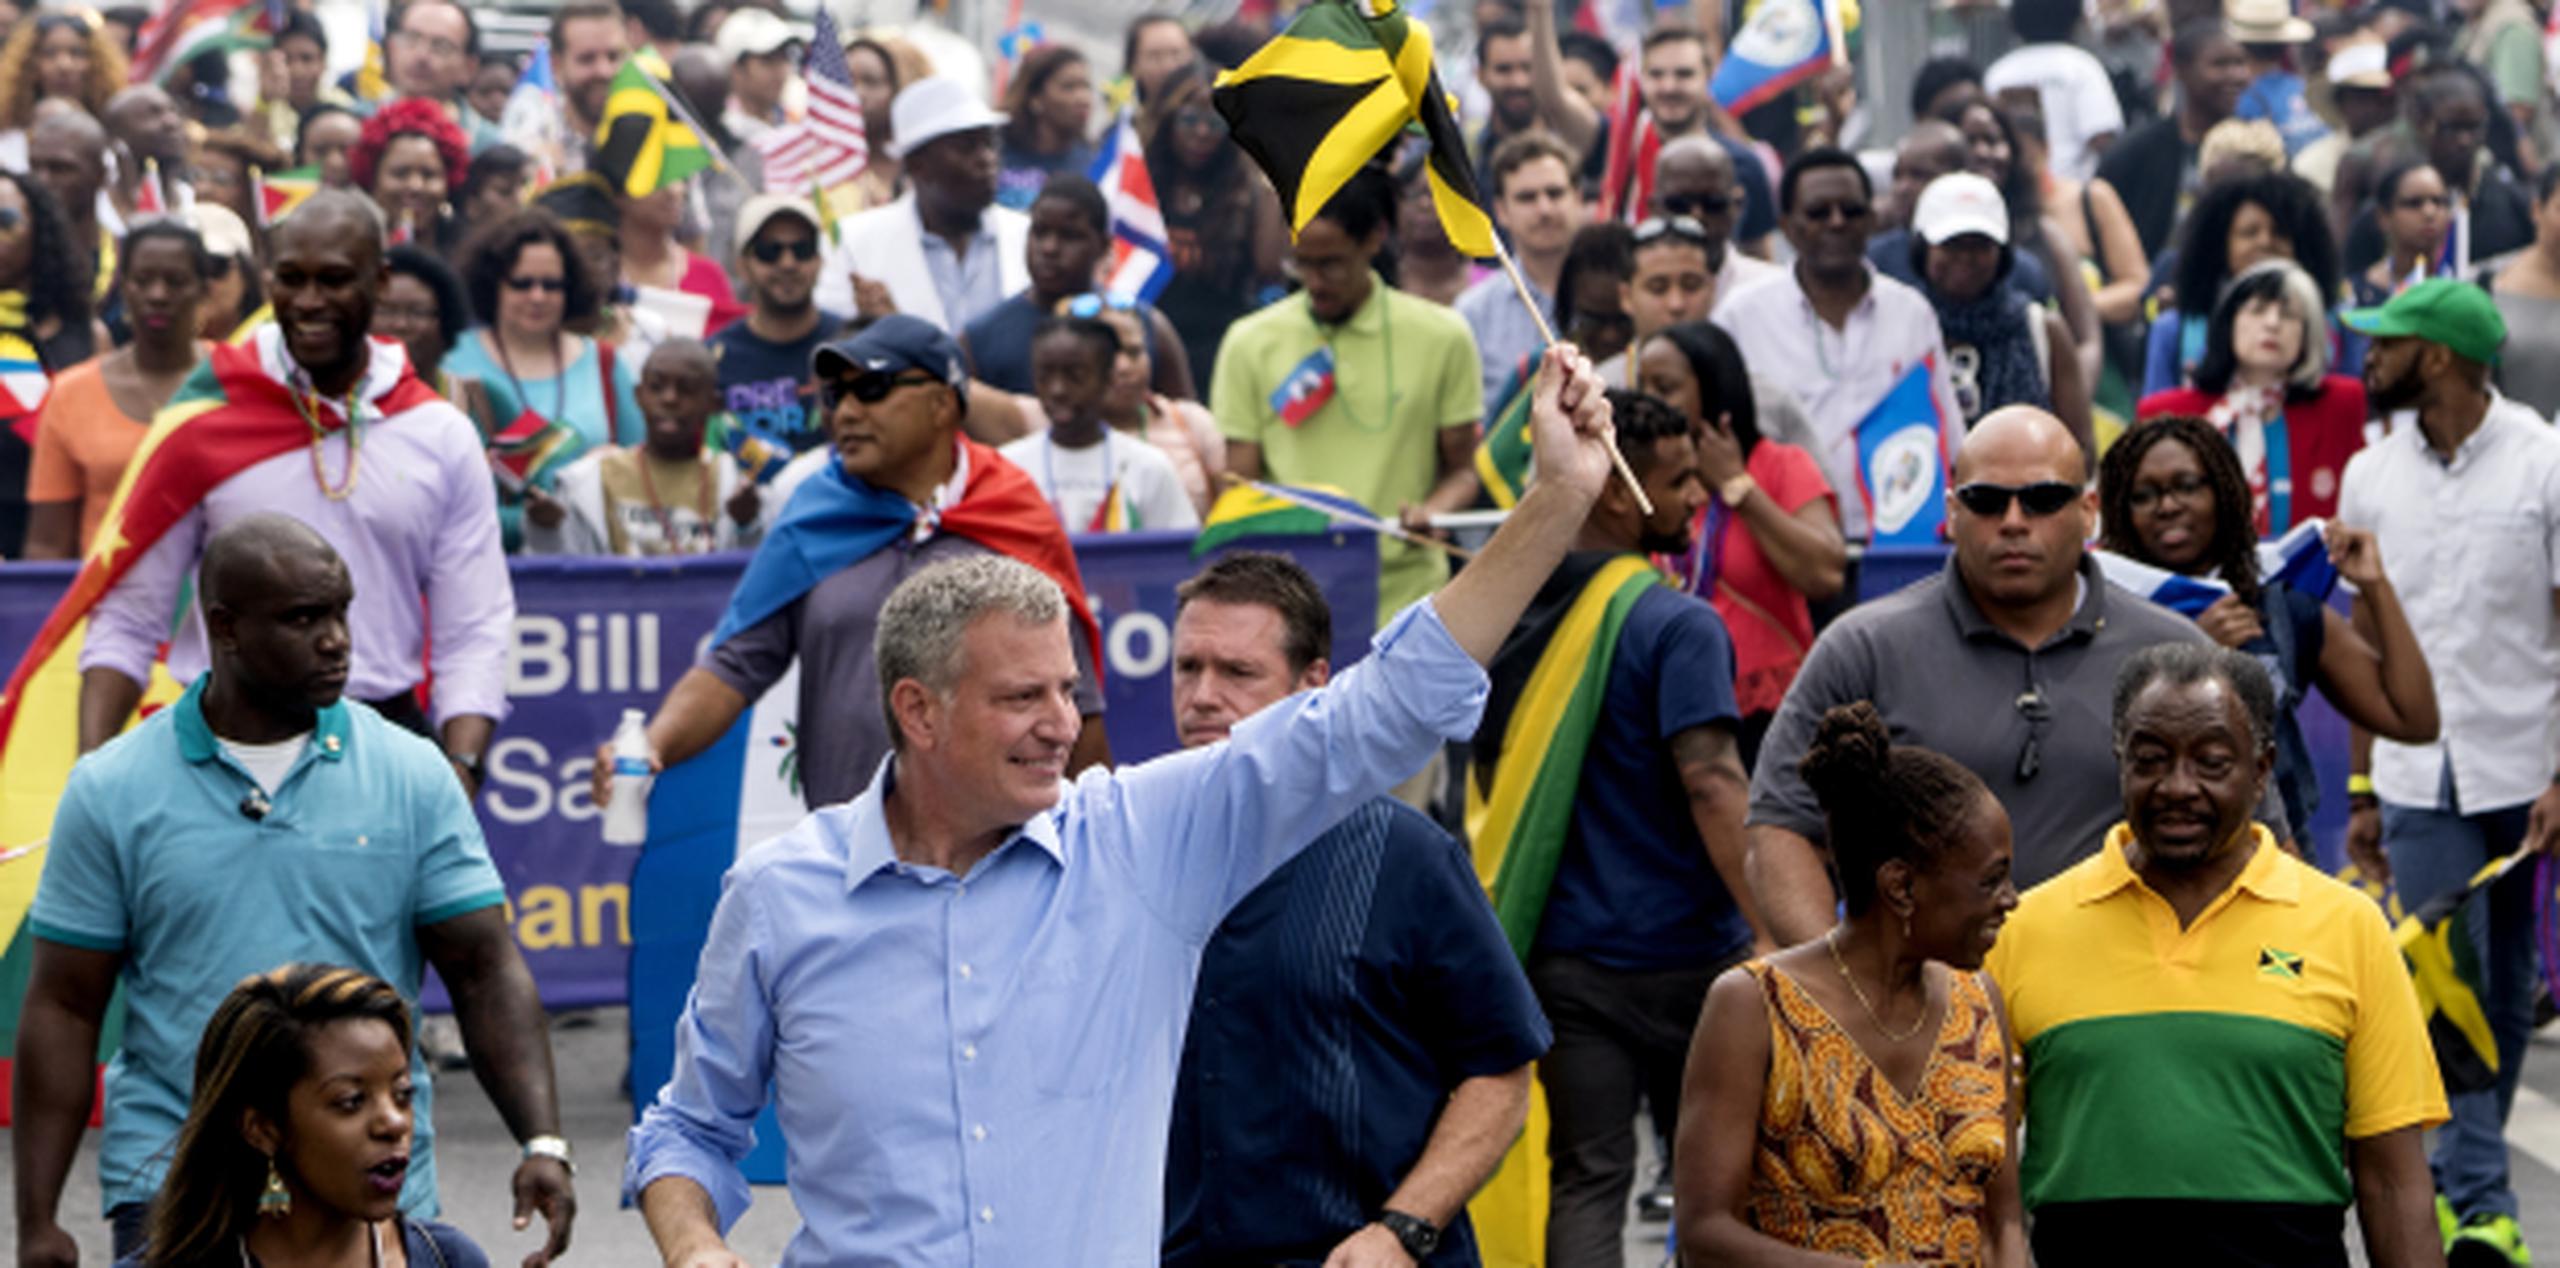 El alcalde de New York City, Bill de Blasio, saluda mientras marcha en una parada del festival. (AP Photo/Craig Ruttle)